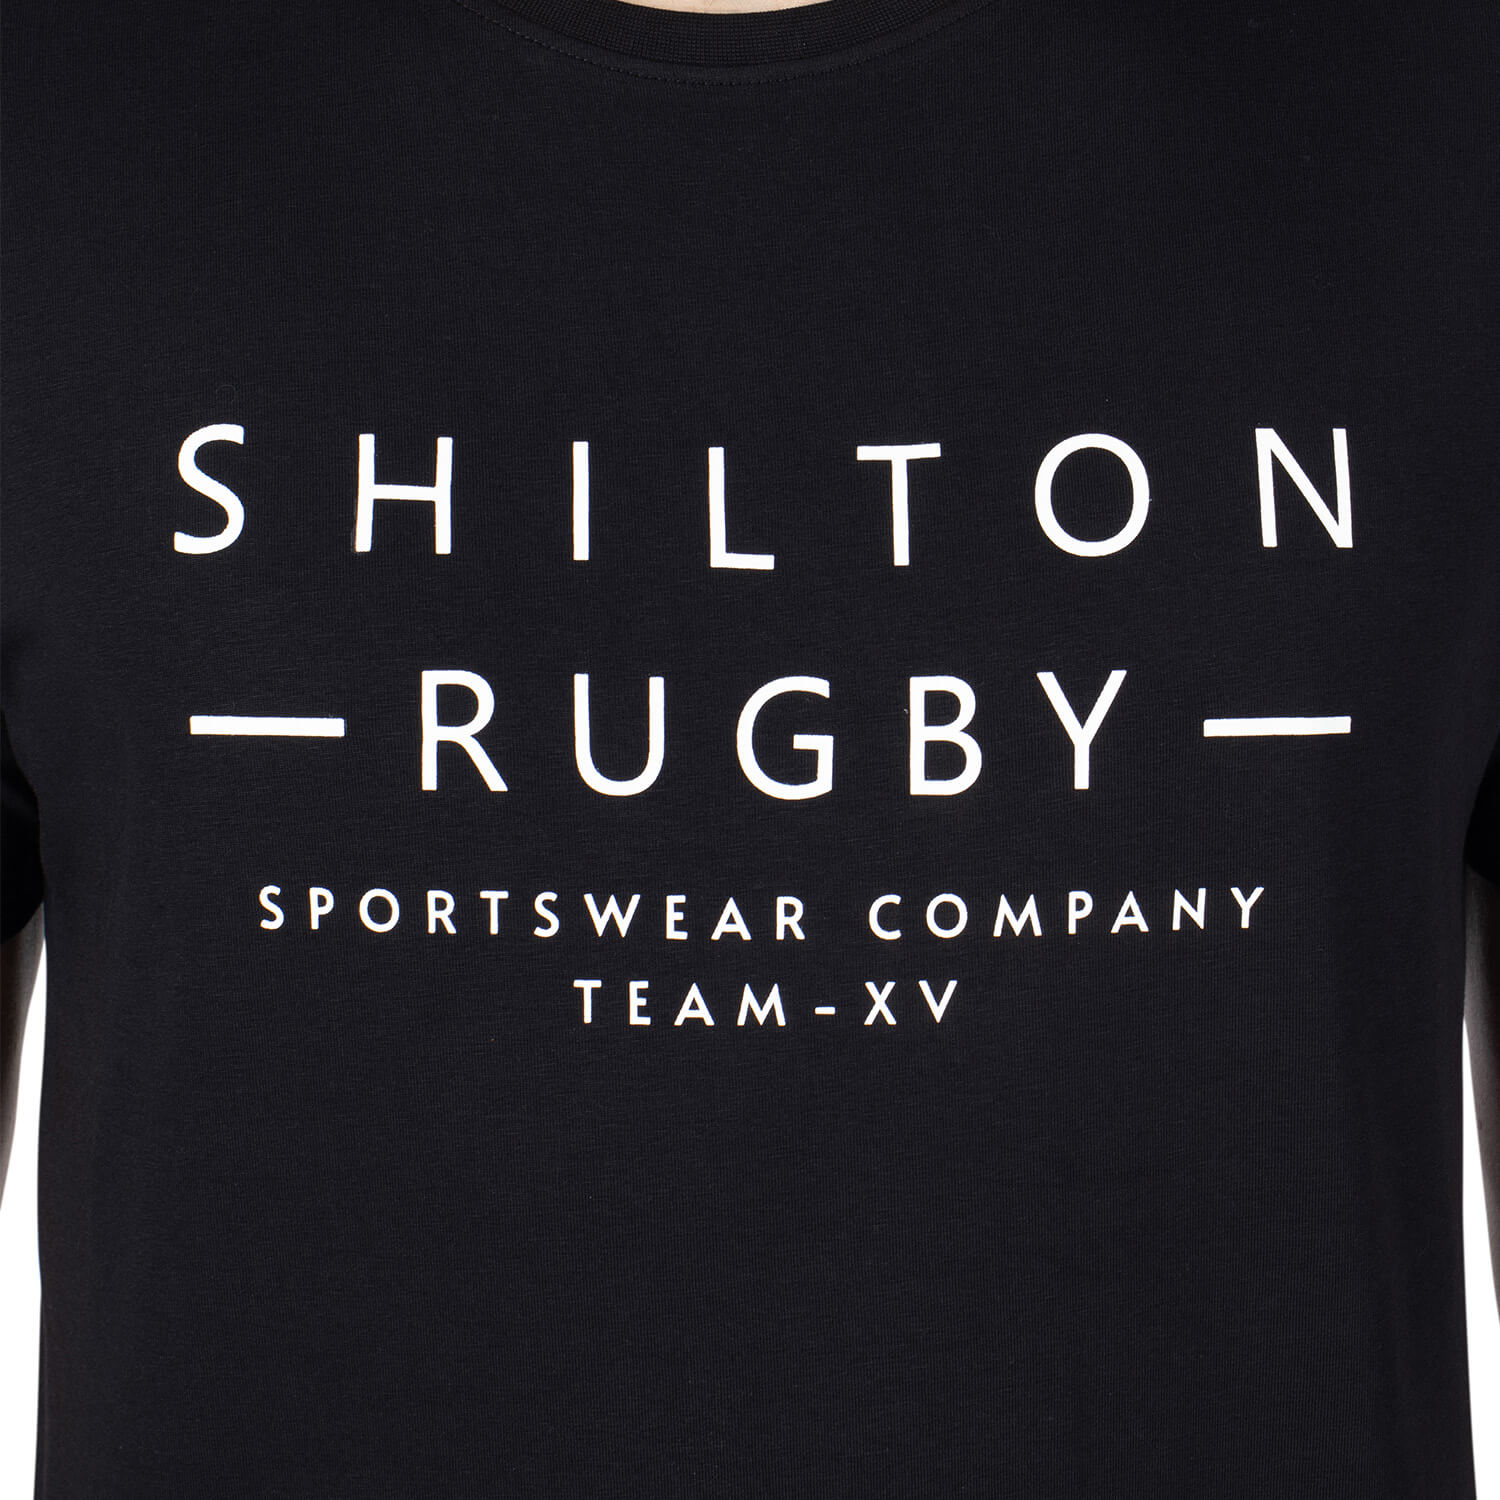 T-shirt rugby team XV